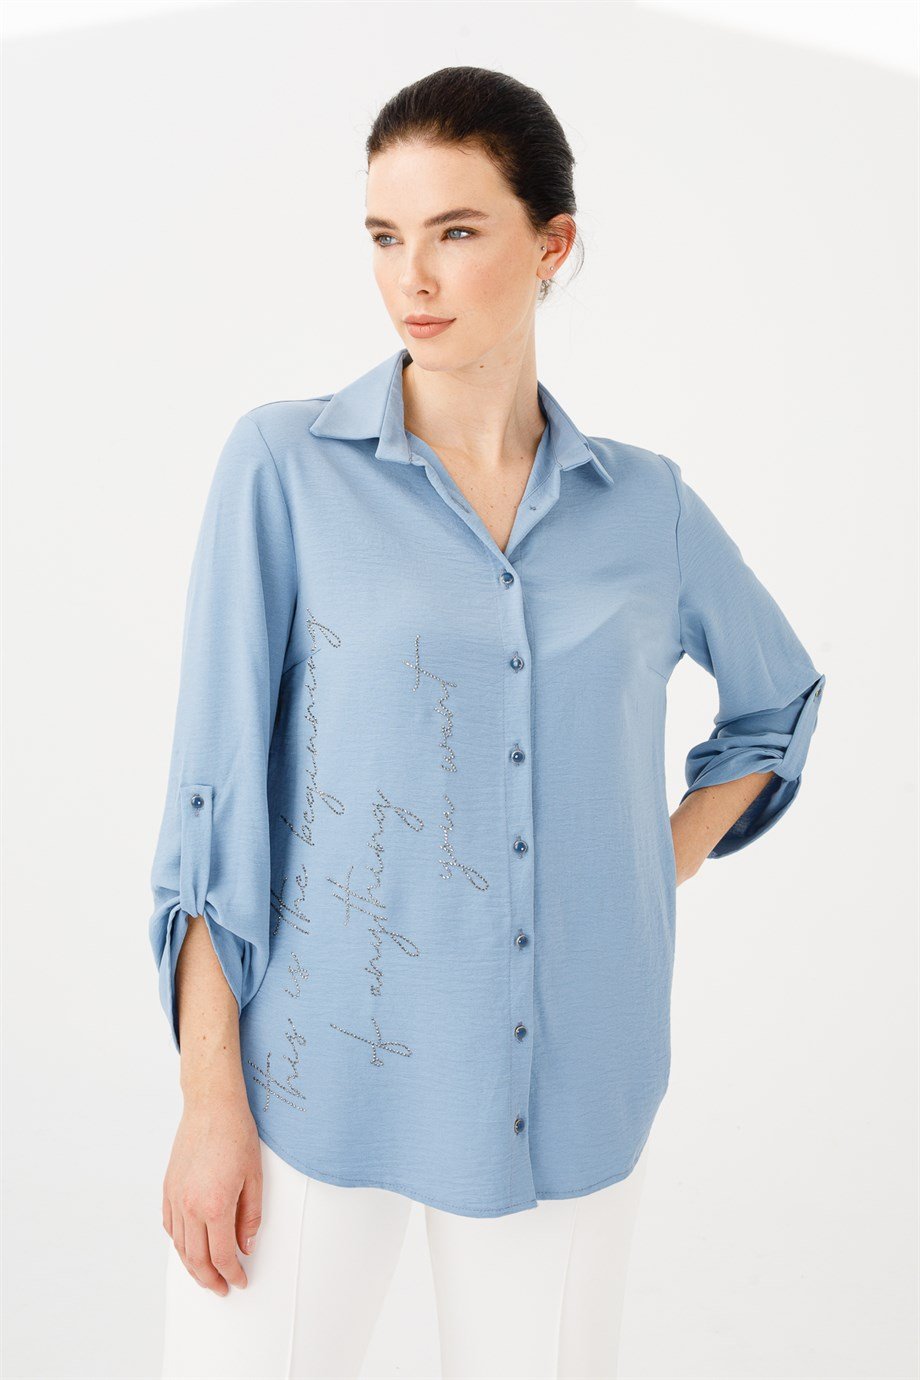 Mutlu Ertan | Butik Triko Gömlek-Önü Taş Detaylı Gömlek-Mavi